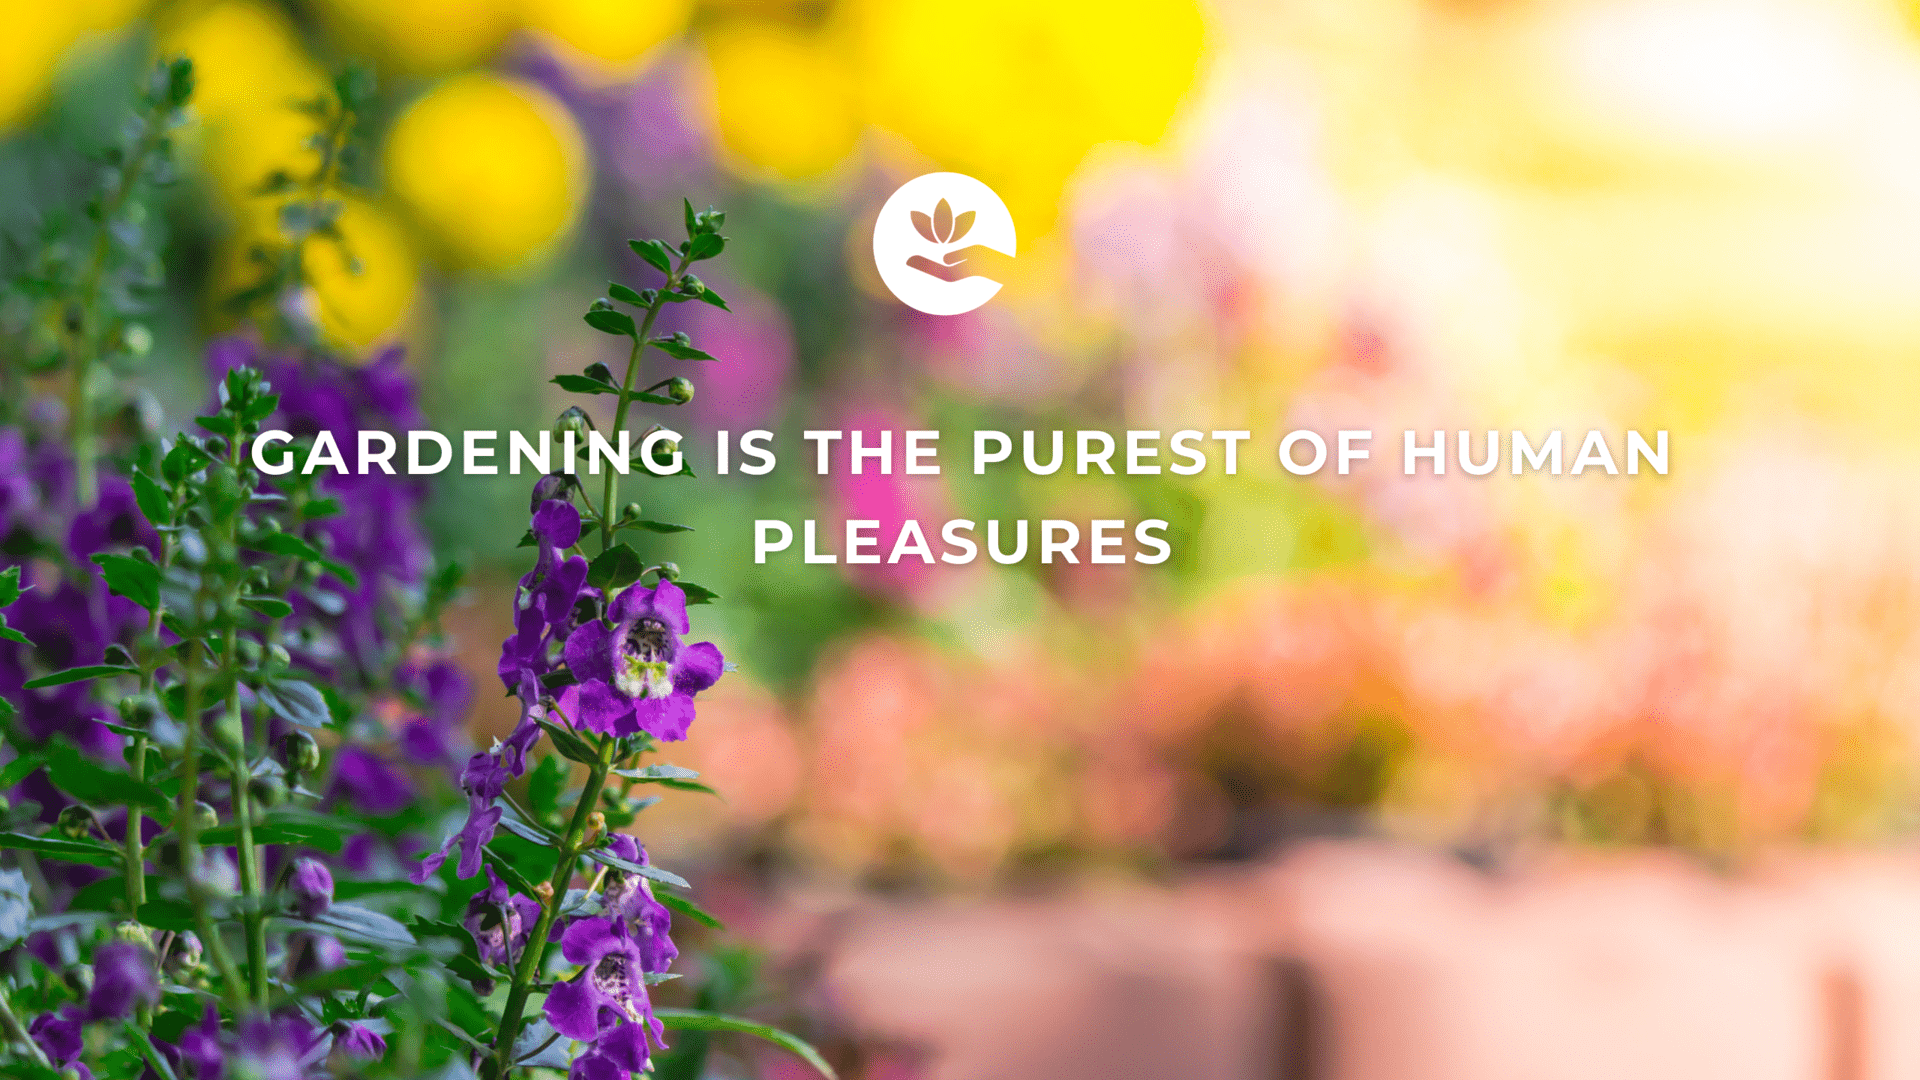 Gardening is the purest of human pleasures.